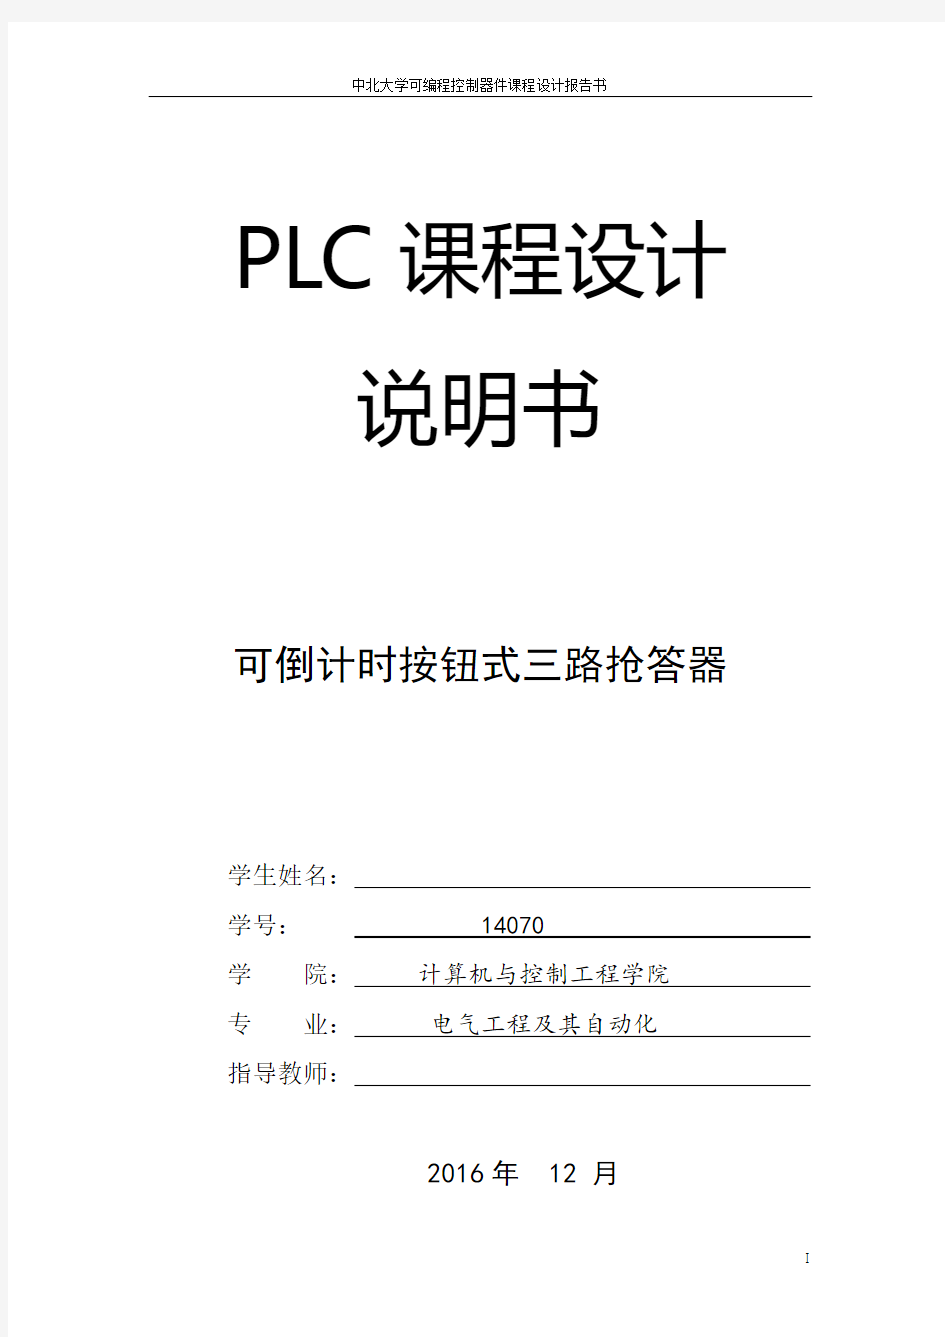 三路抢答器PLC课程设计任务书